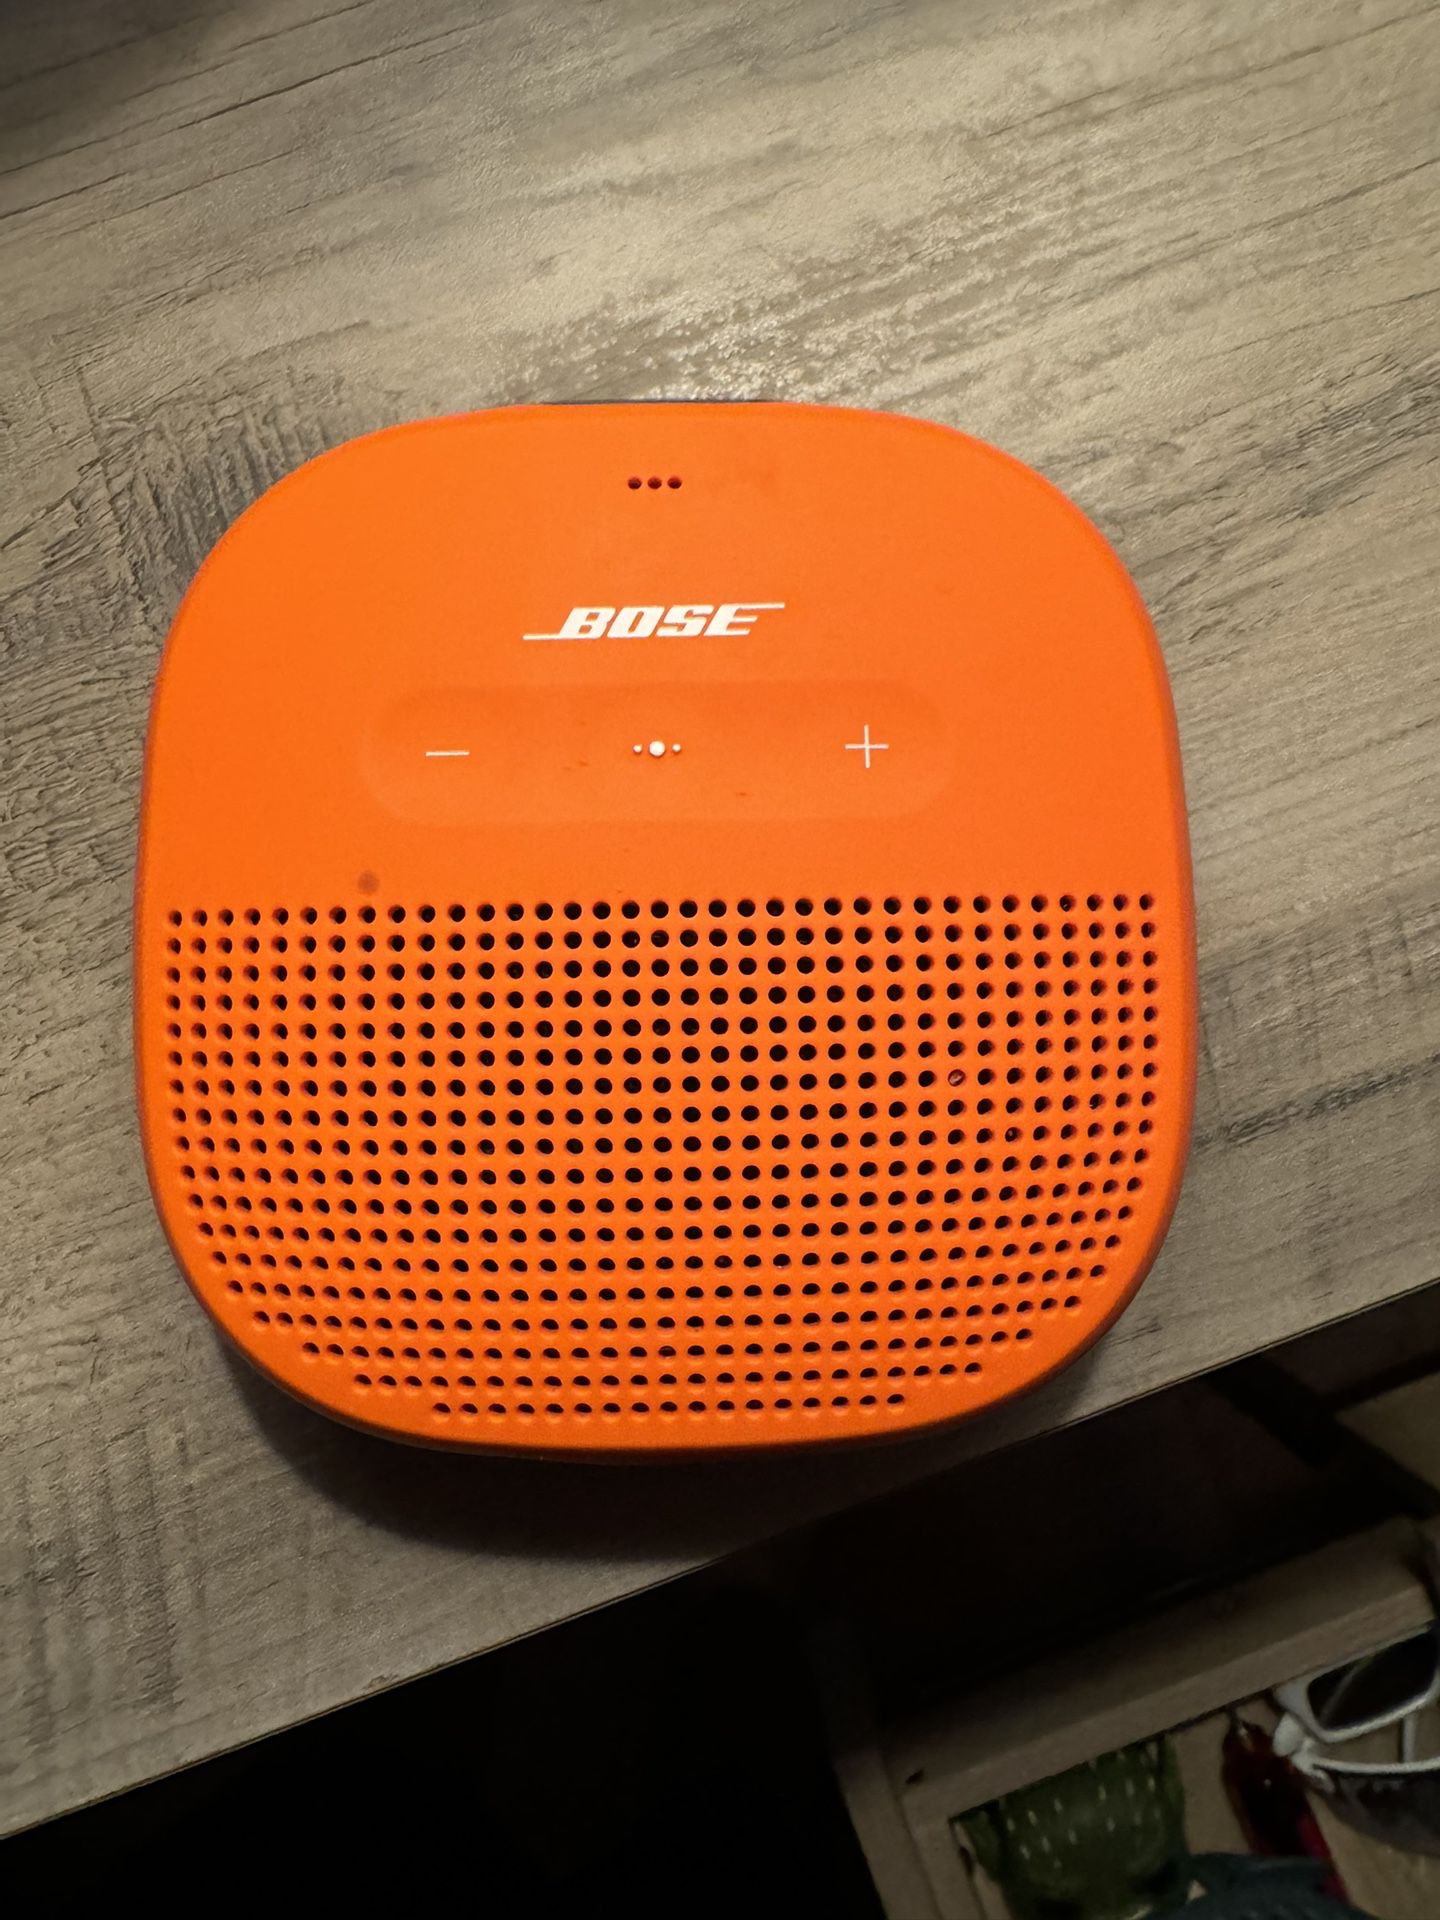 Bose SoundLink Speaker